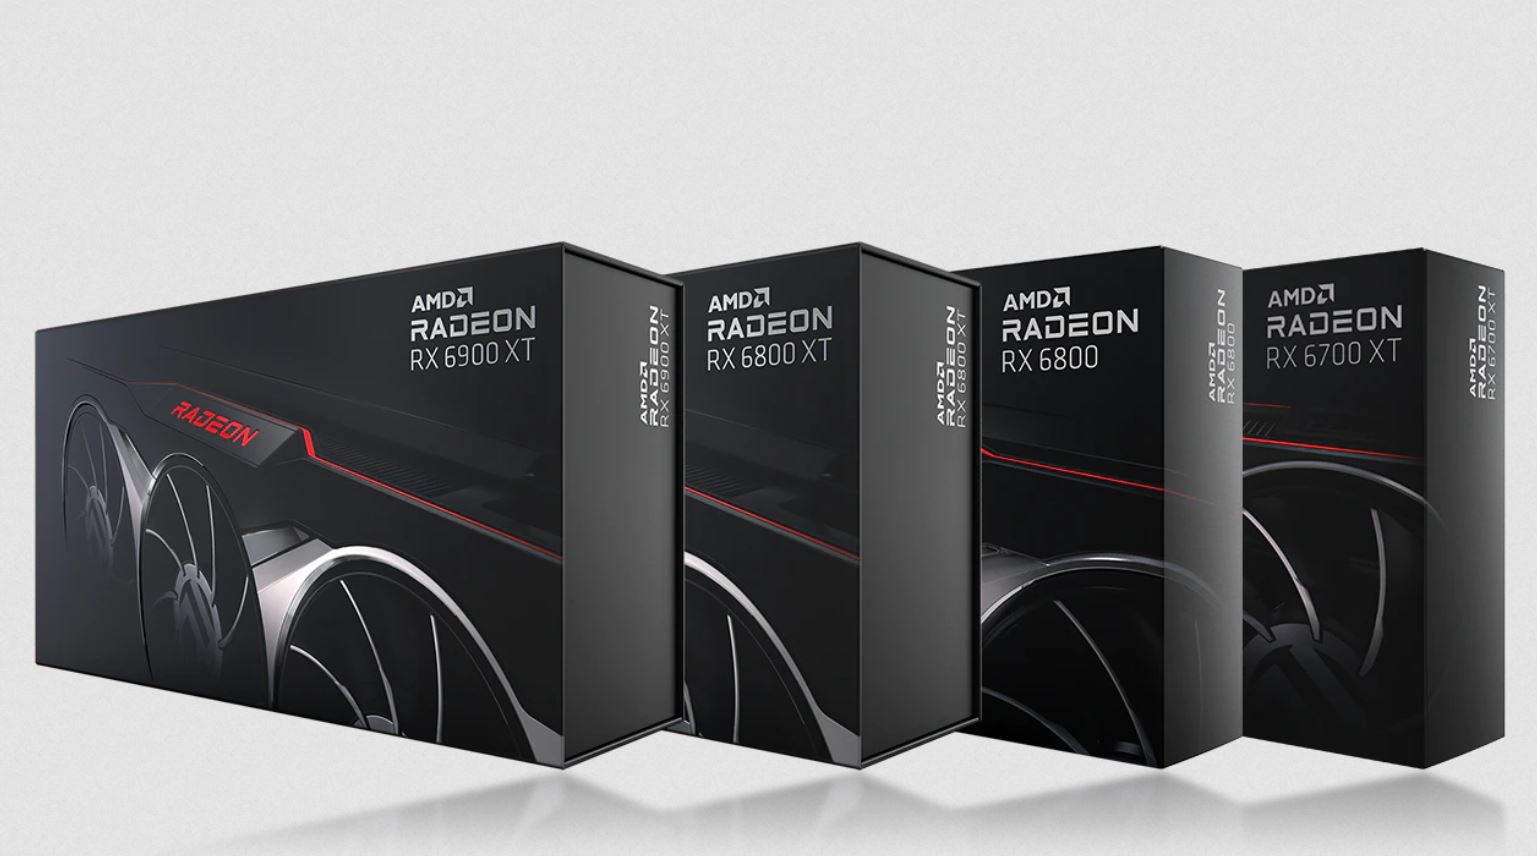 Immagine pubblicata in relazione al seguente contenuto: AMD non ha limitato le performance delle Radeon RX 6000 con il mining | Nome immagine: news31820_AMD-Radeon-RX-6000-Series_1.jpg